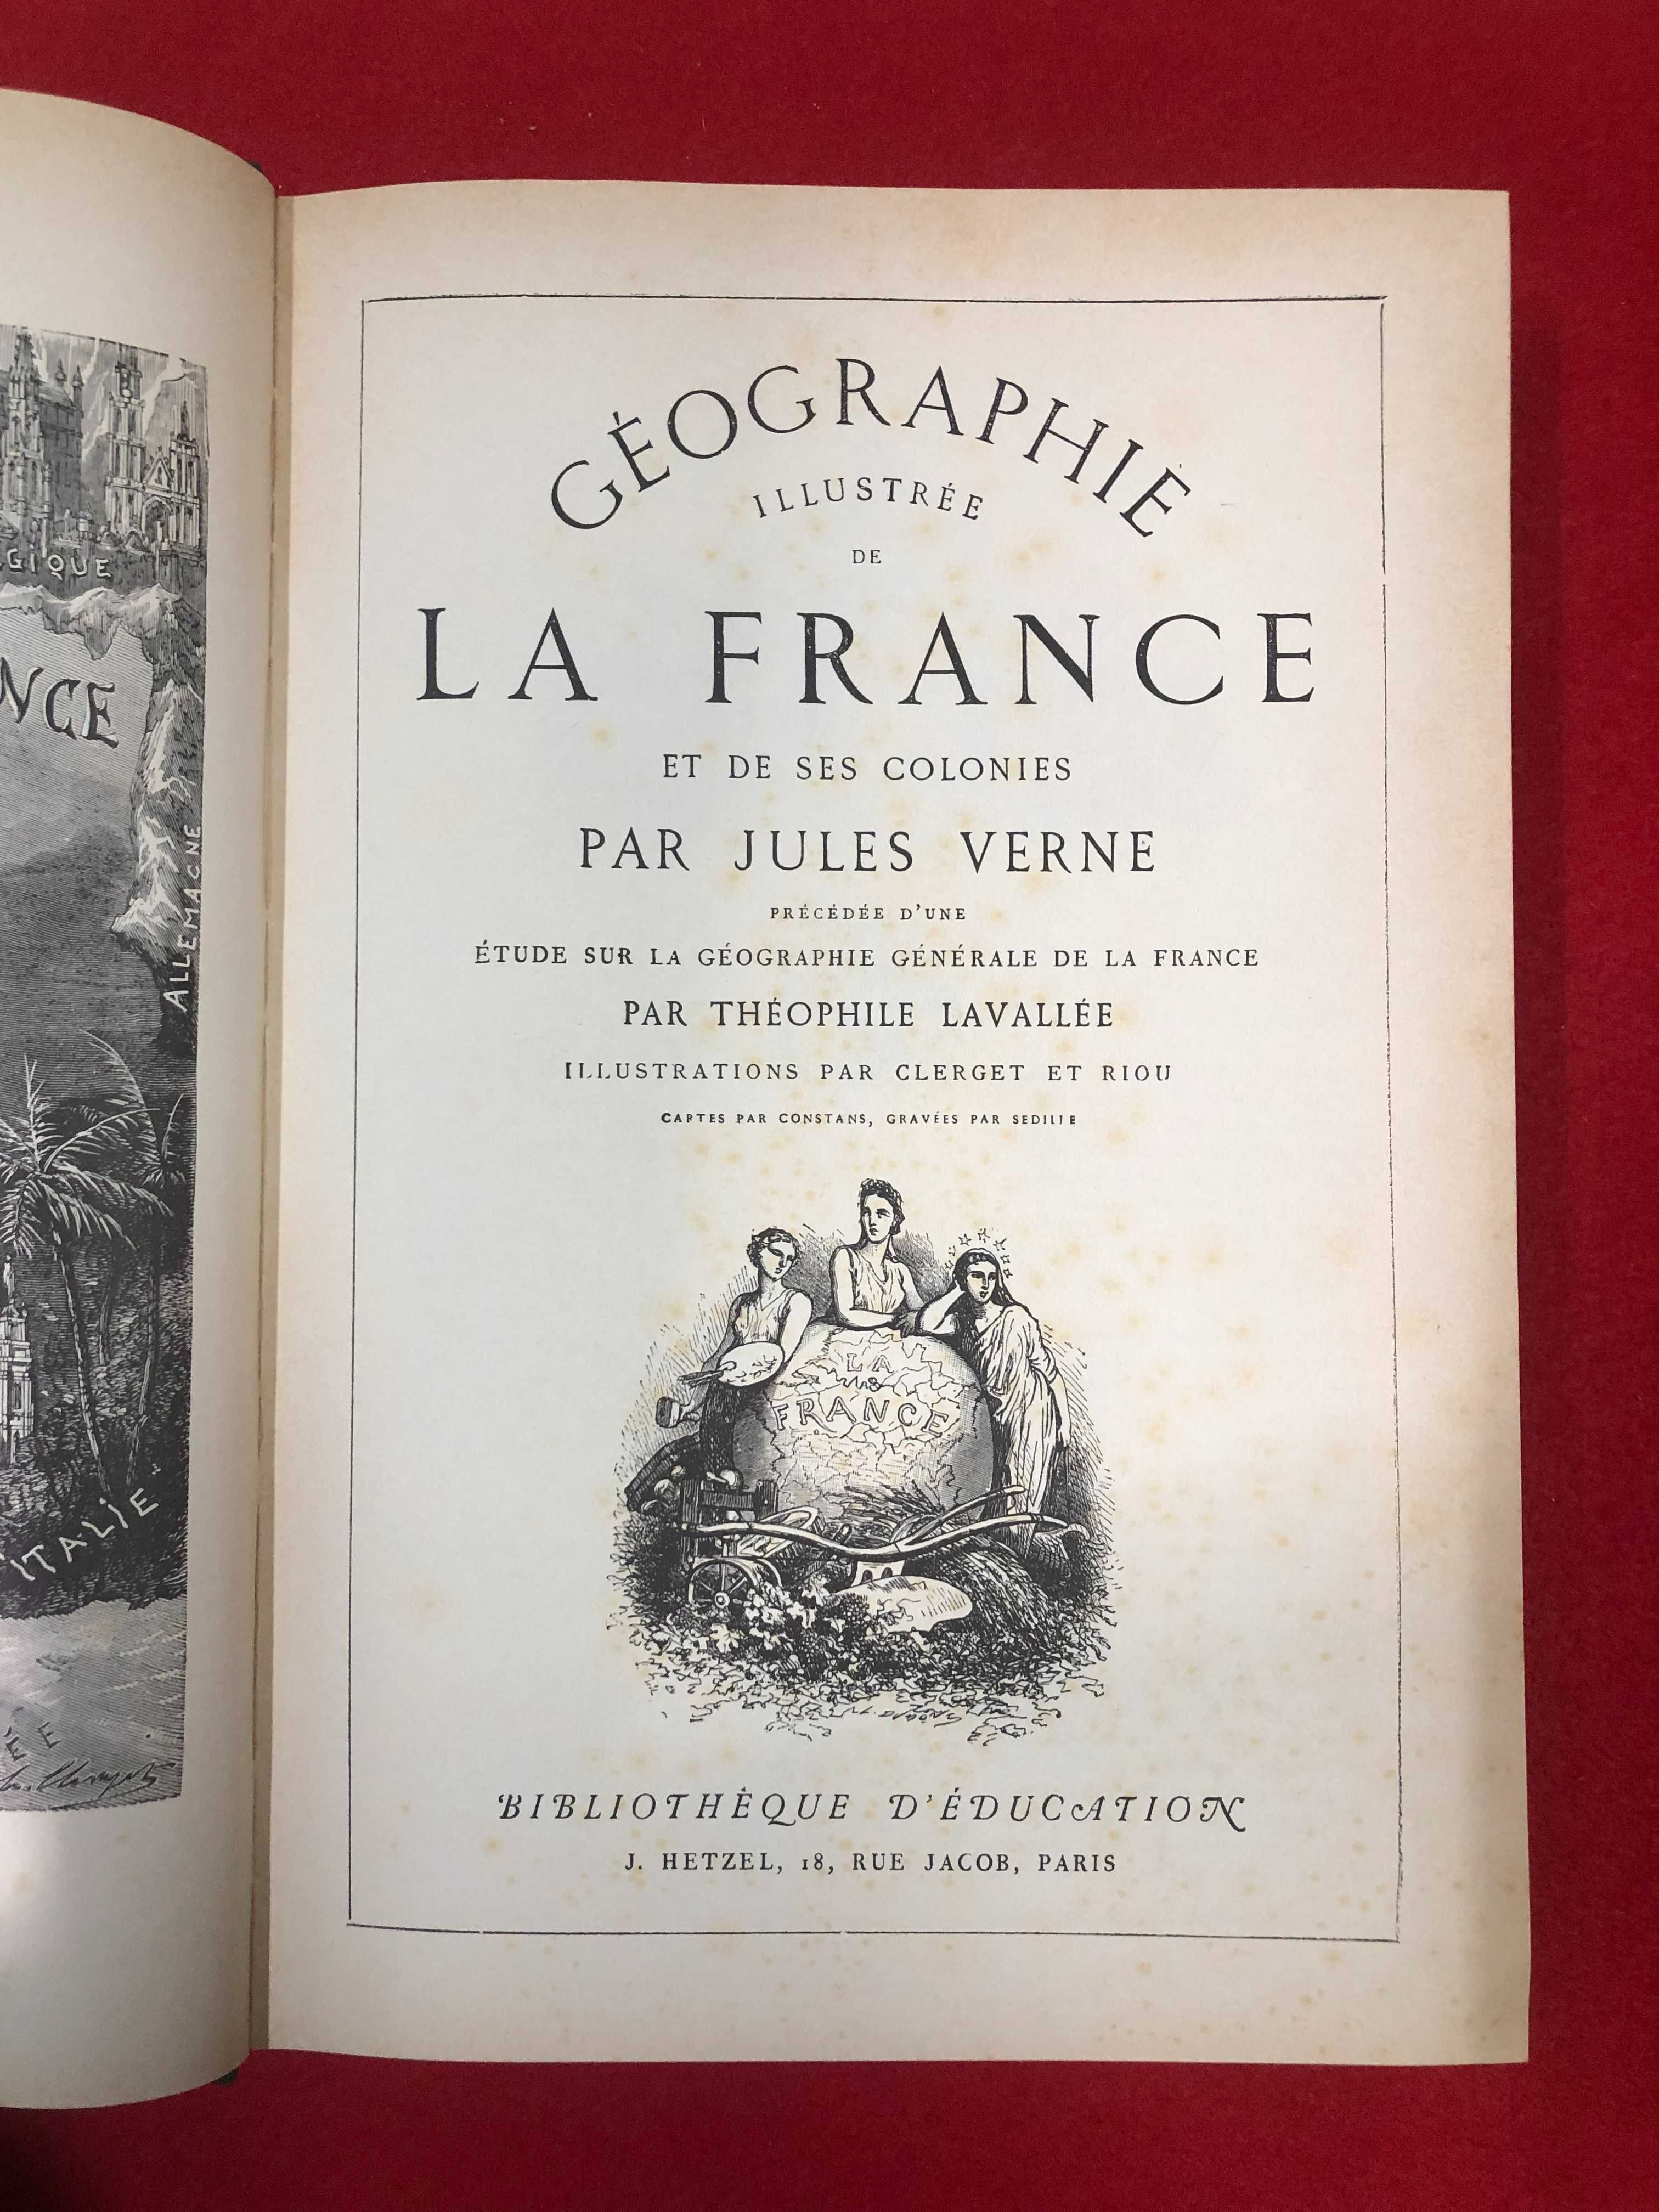 Géographie illustrée de la France et de ses colonies - Jules Verne